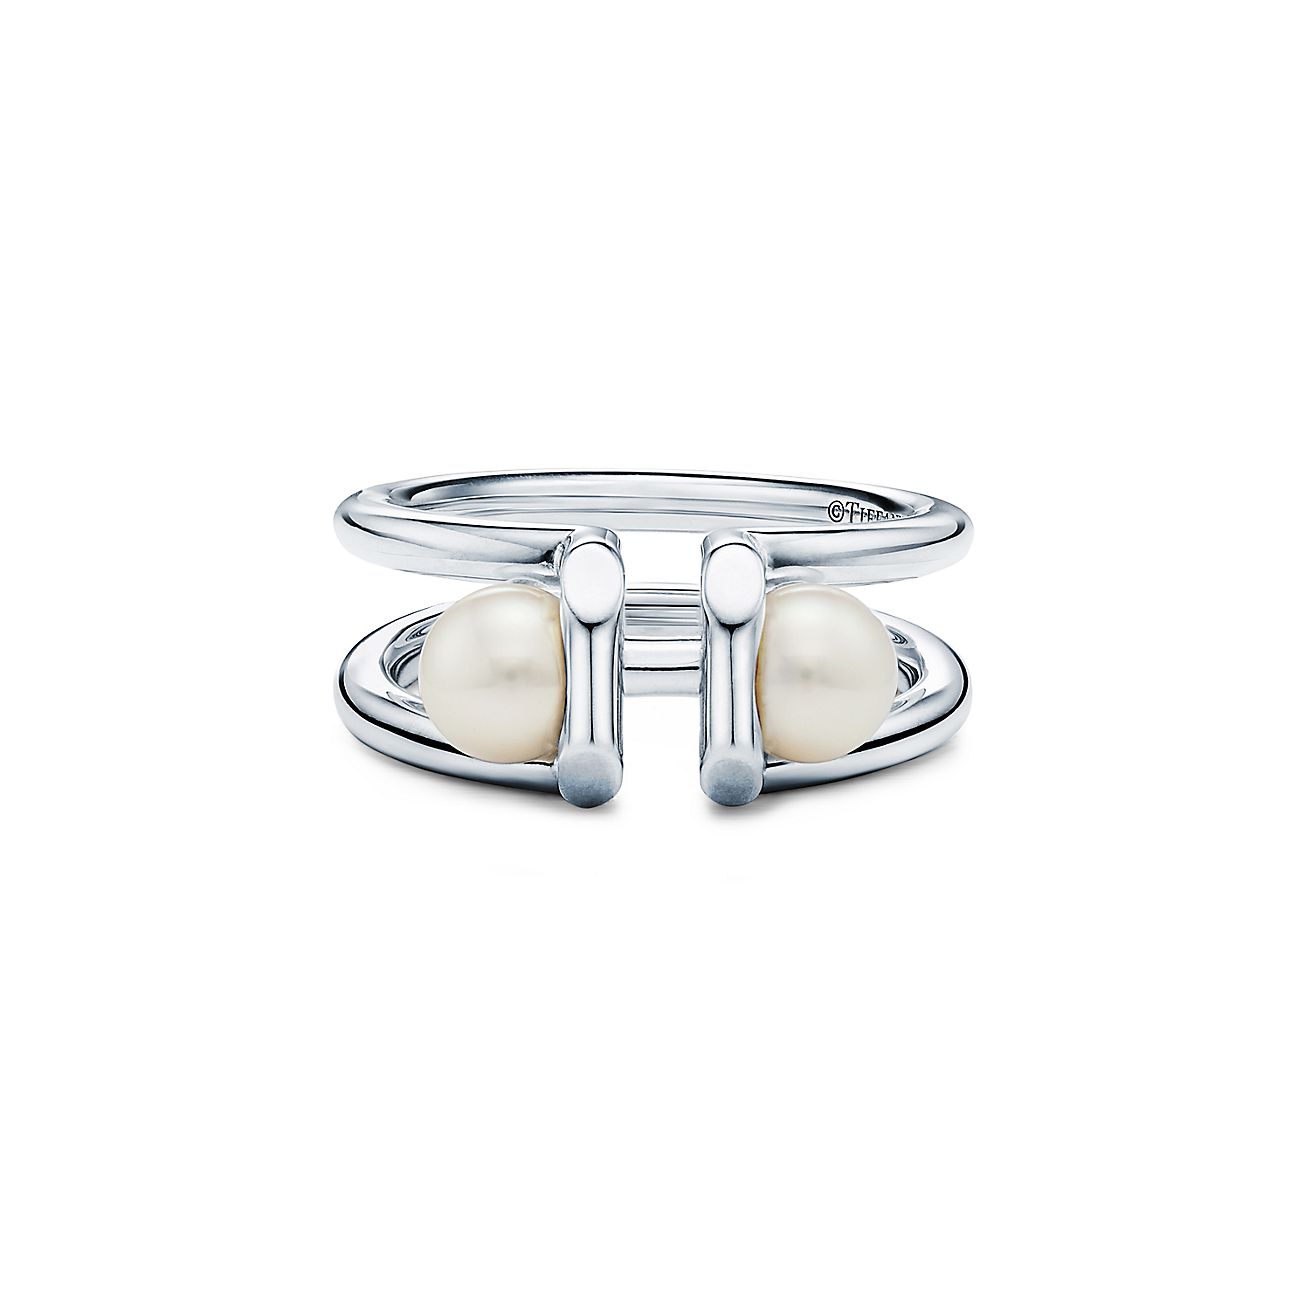 Tiffany HardWear double pearl ring in 